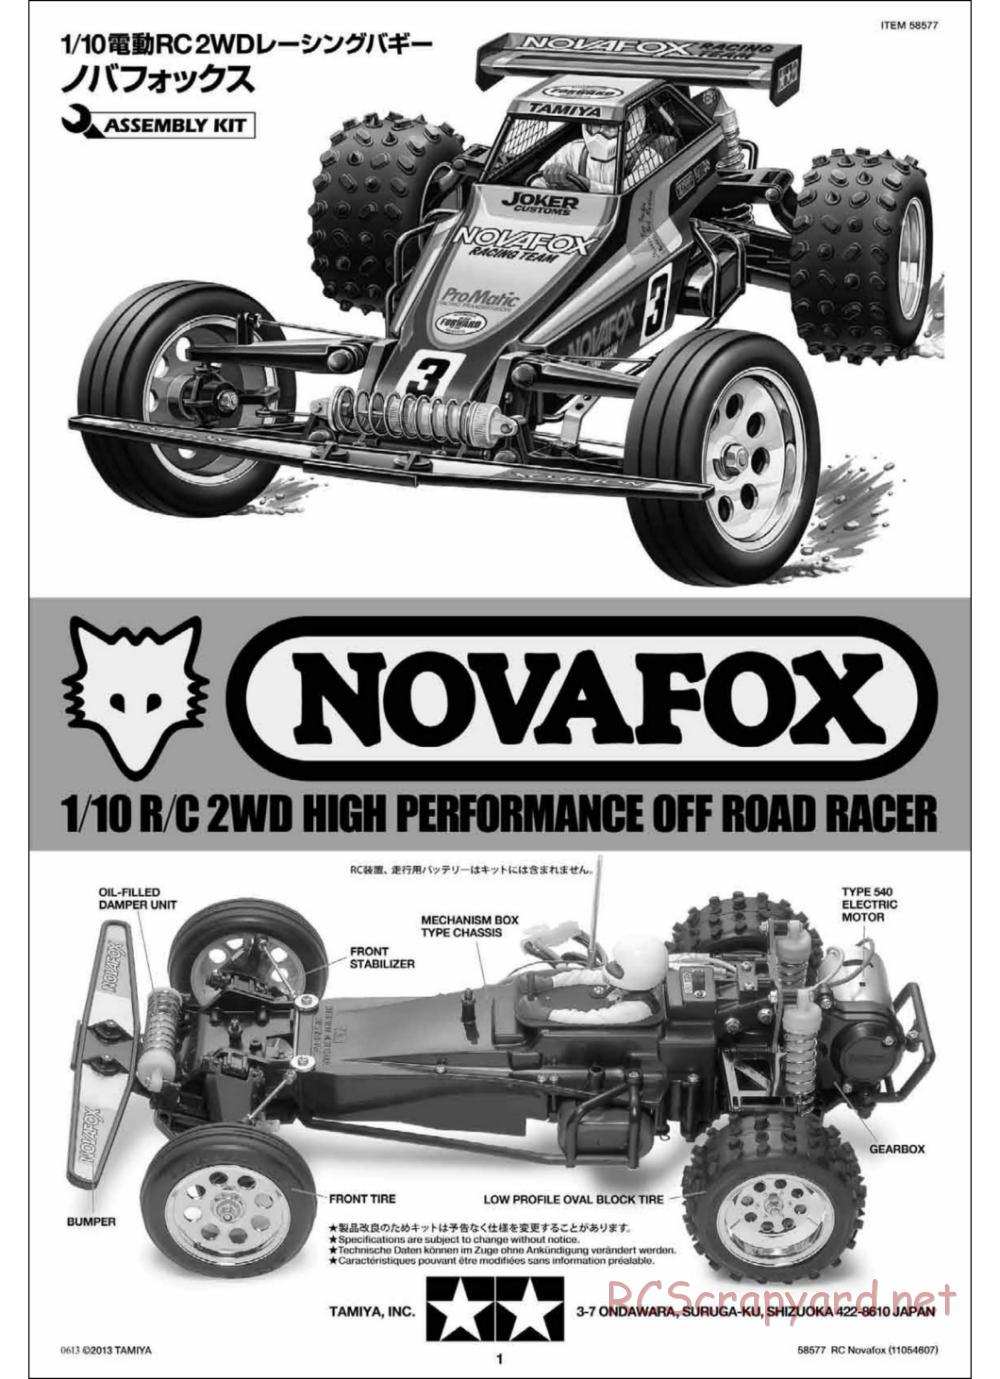 Tamiya - Novafox Chassis - Manual - Page 1